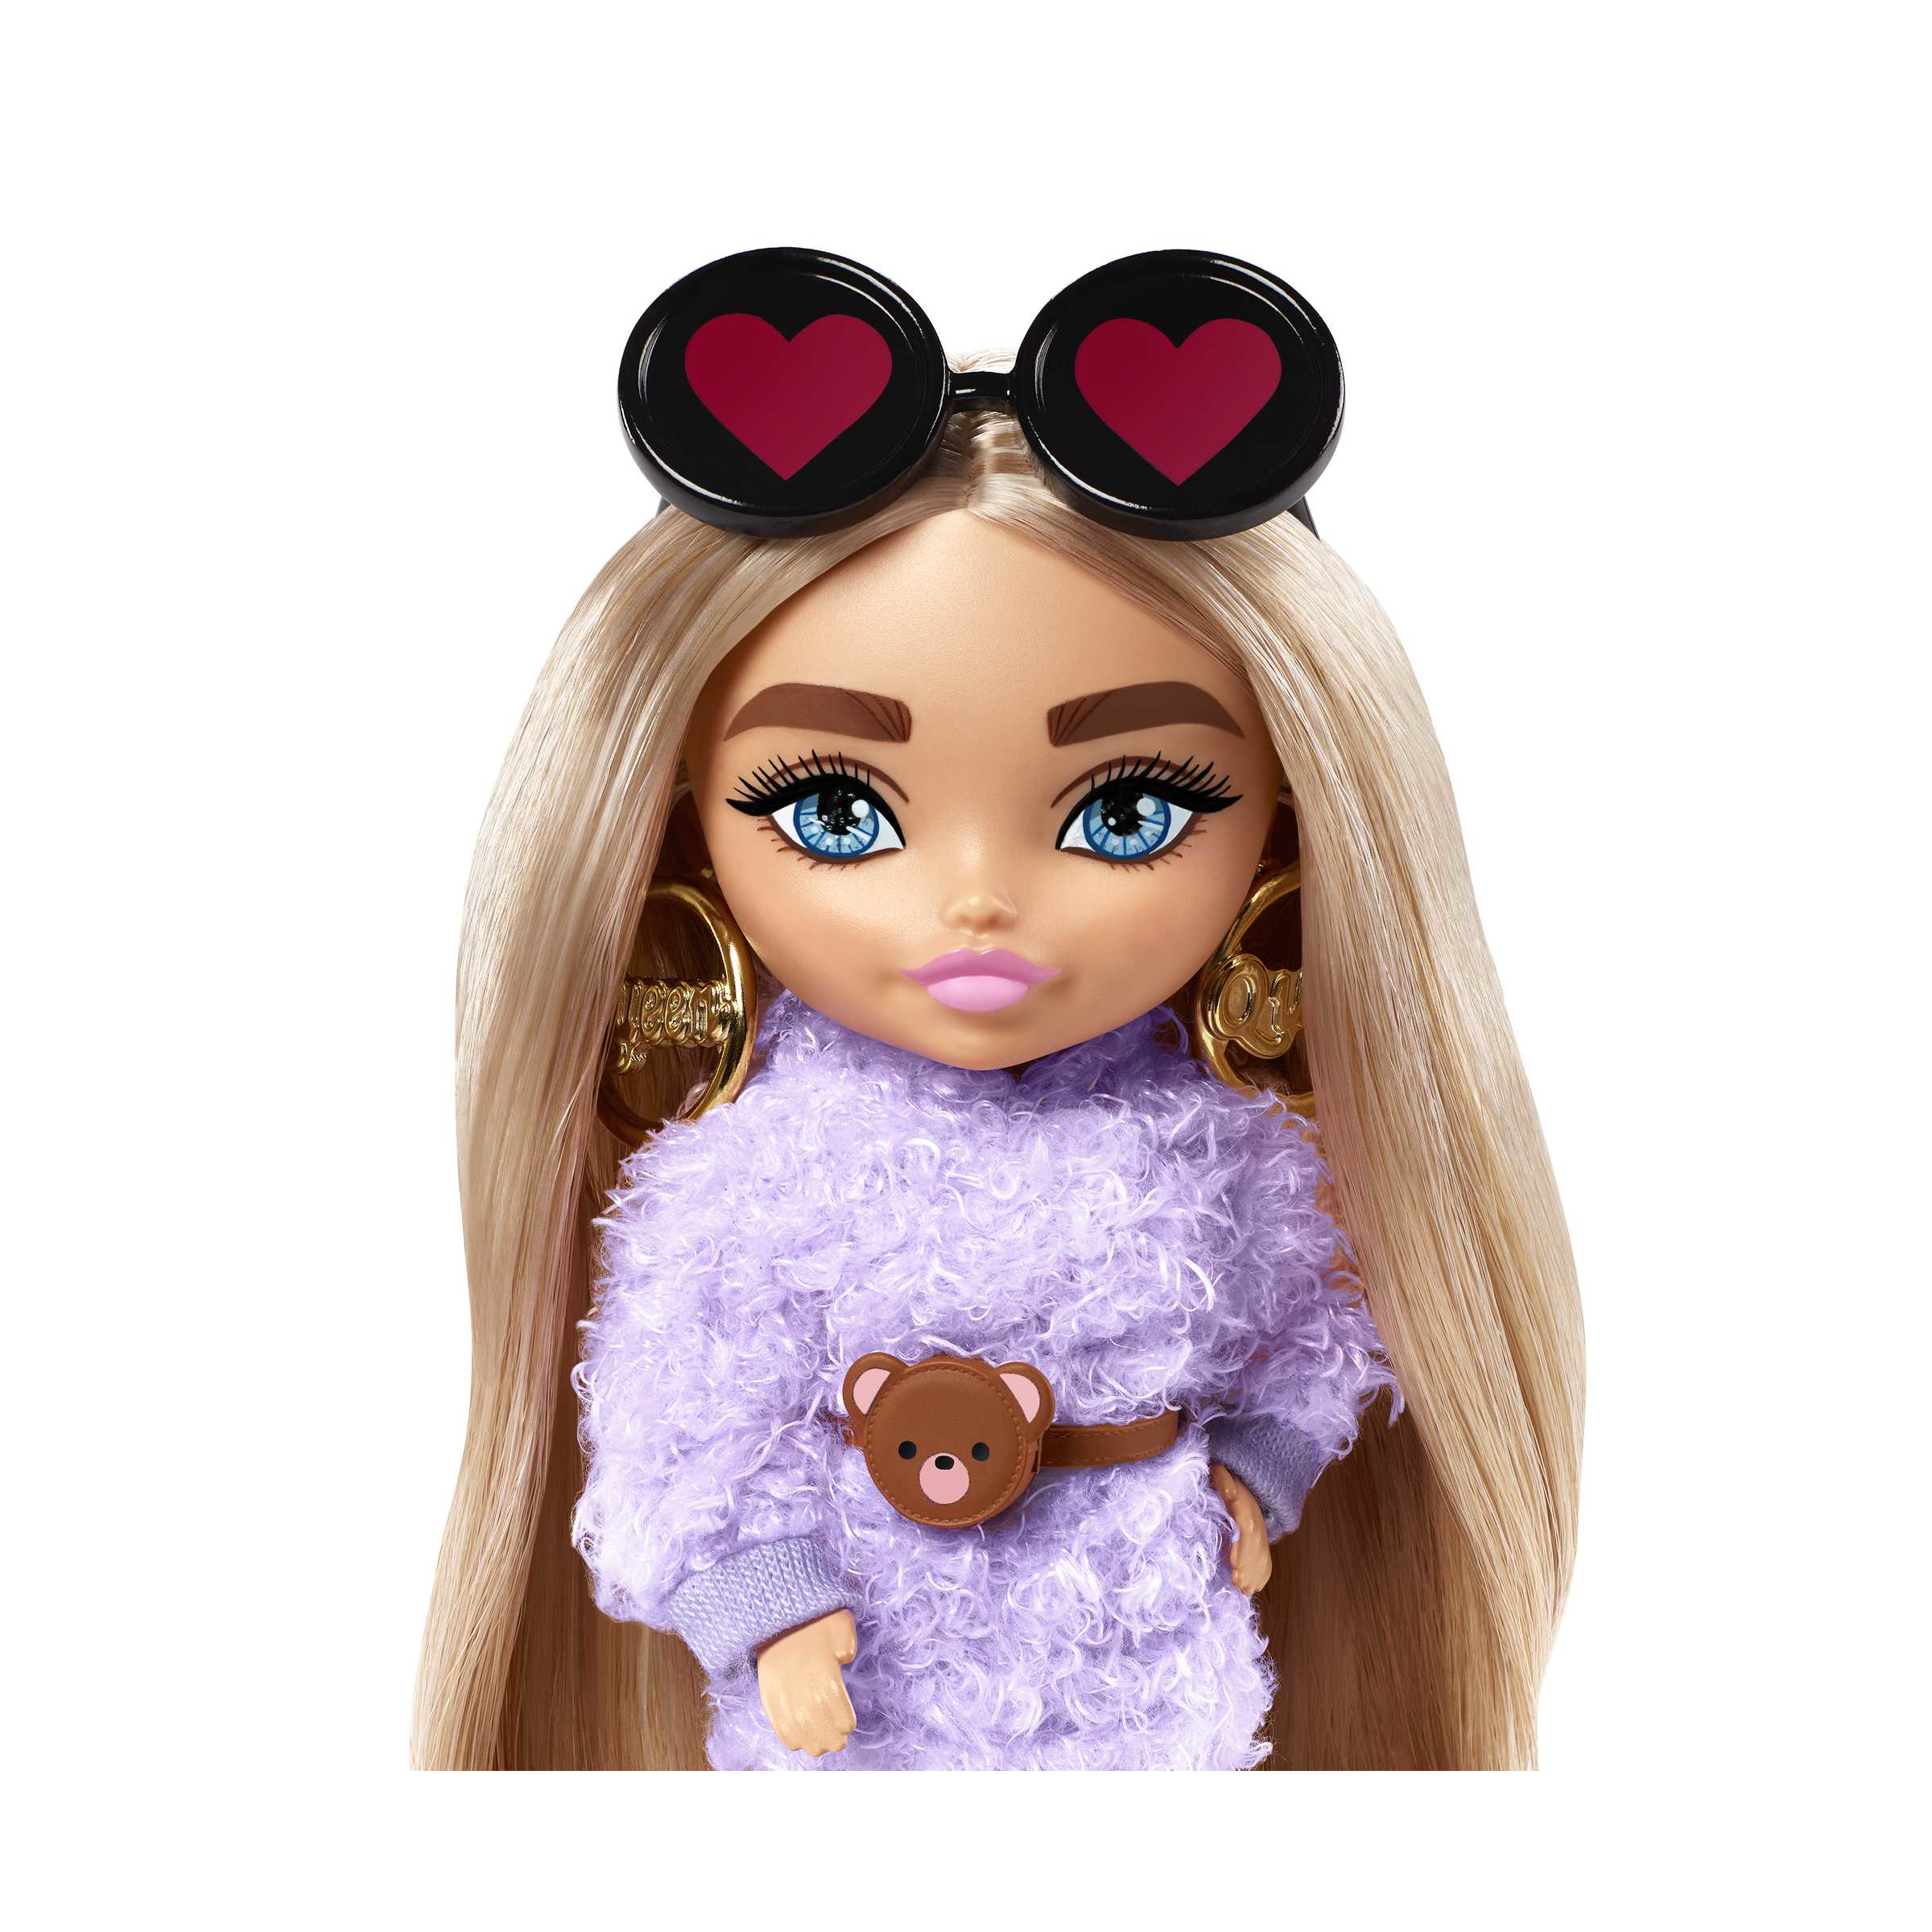 Barbie-extra minis mini bambola articolata con vestito lilla, occhiali a cuore e morbidi capelli biondi, giocattolo per bambini 3+ anni, hgp66 - Barbie